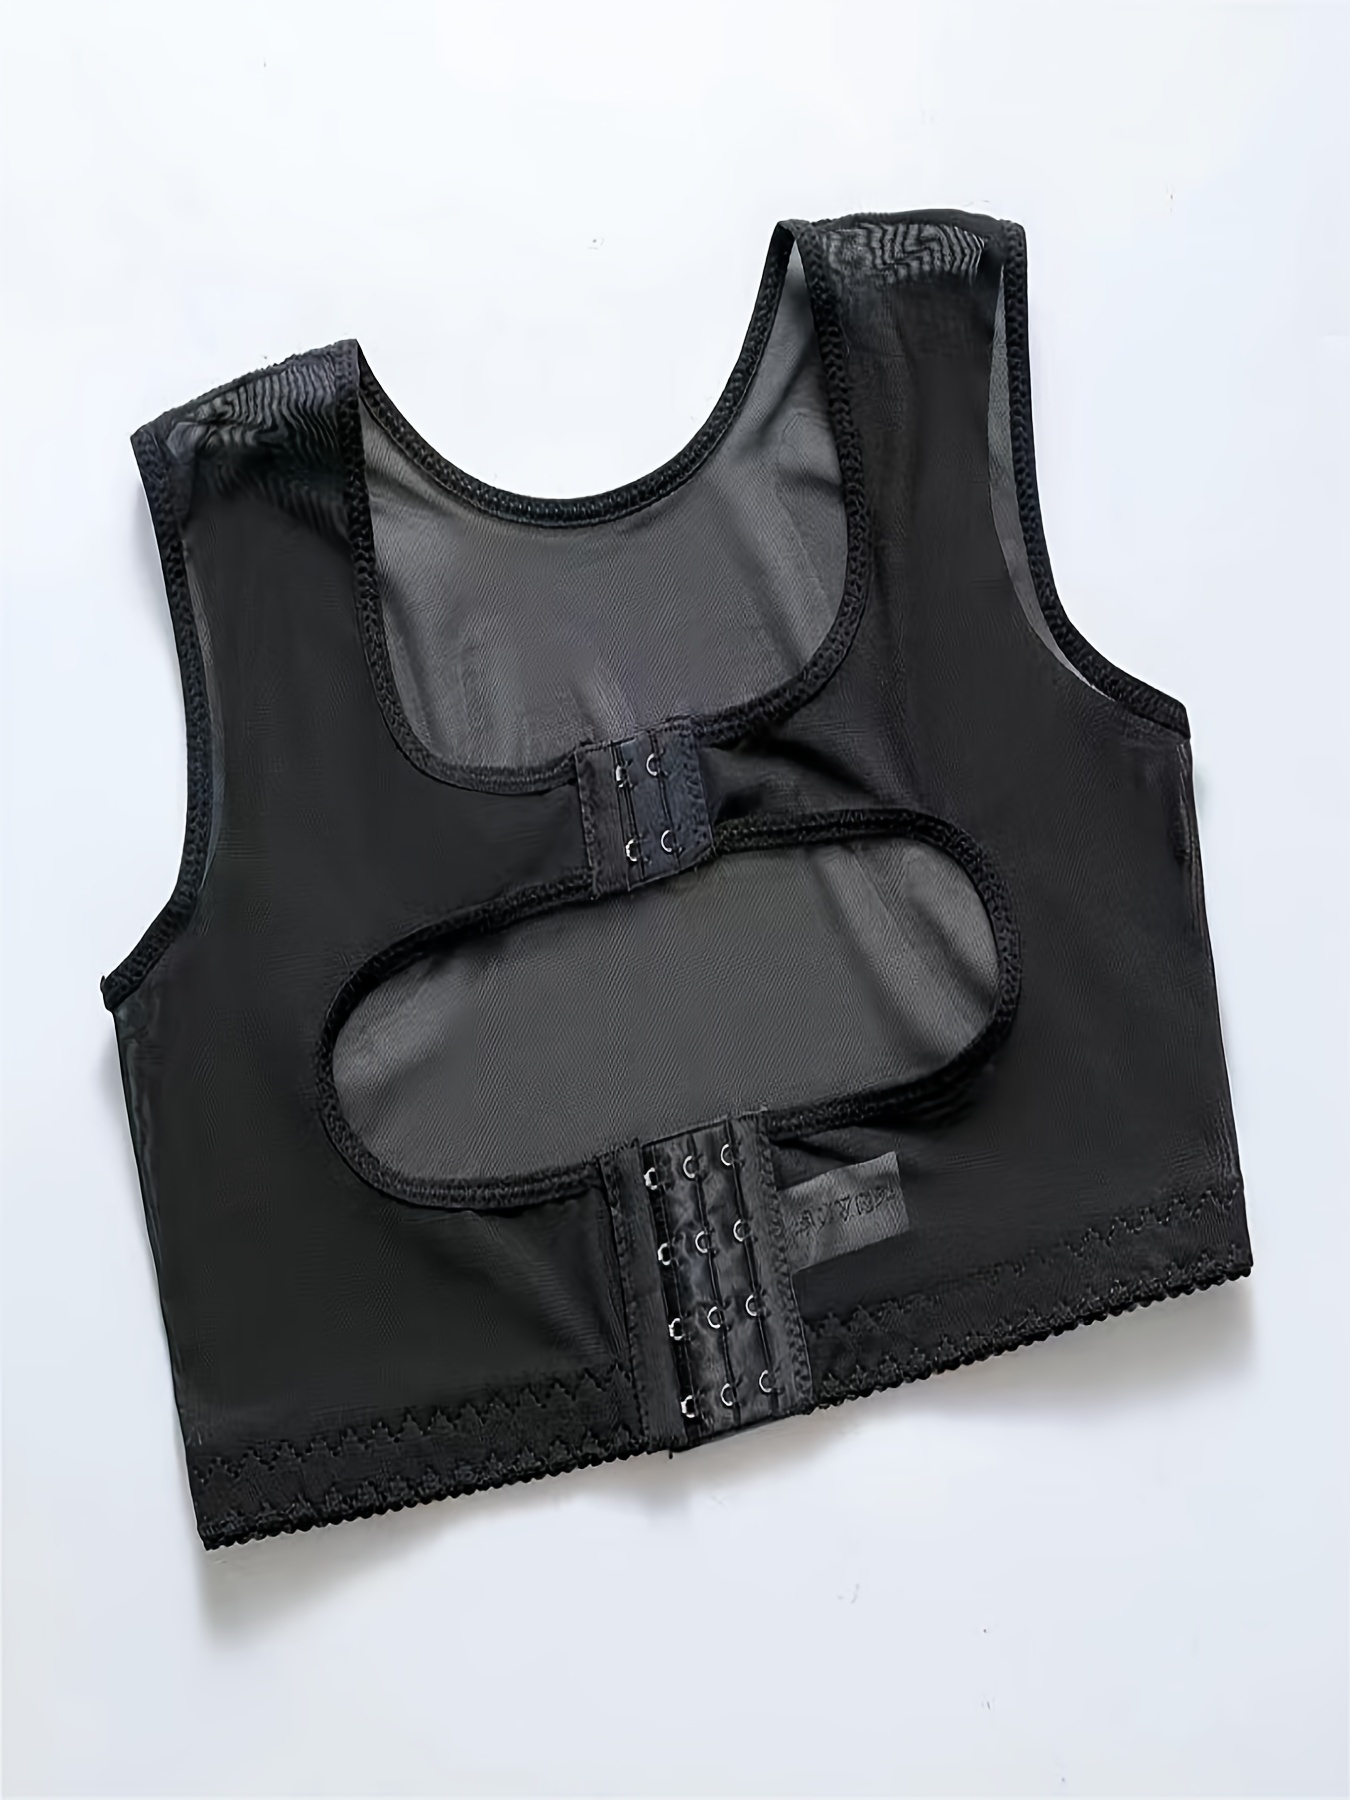 Back Support Vest Shapewear Tops for Hunchback Sagging Shaper Chest Brace  Arm Shaper for Women Short Sleeve,Black-3X